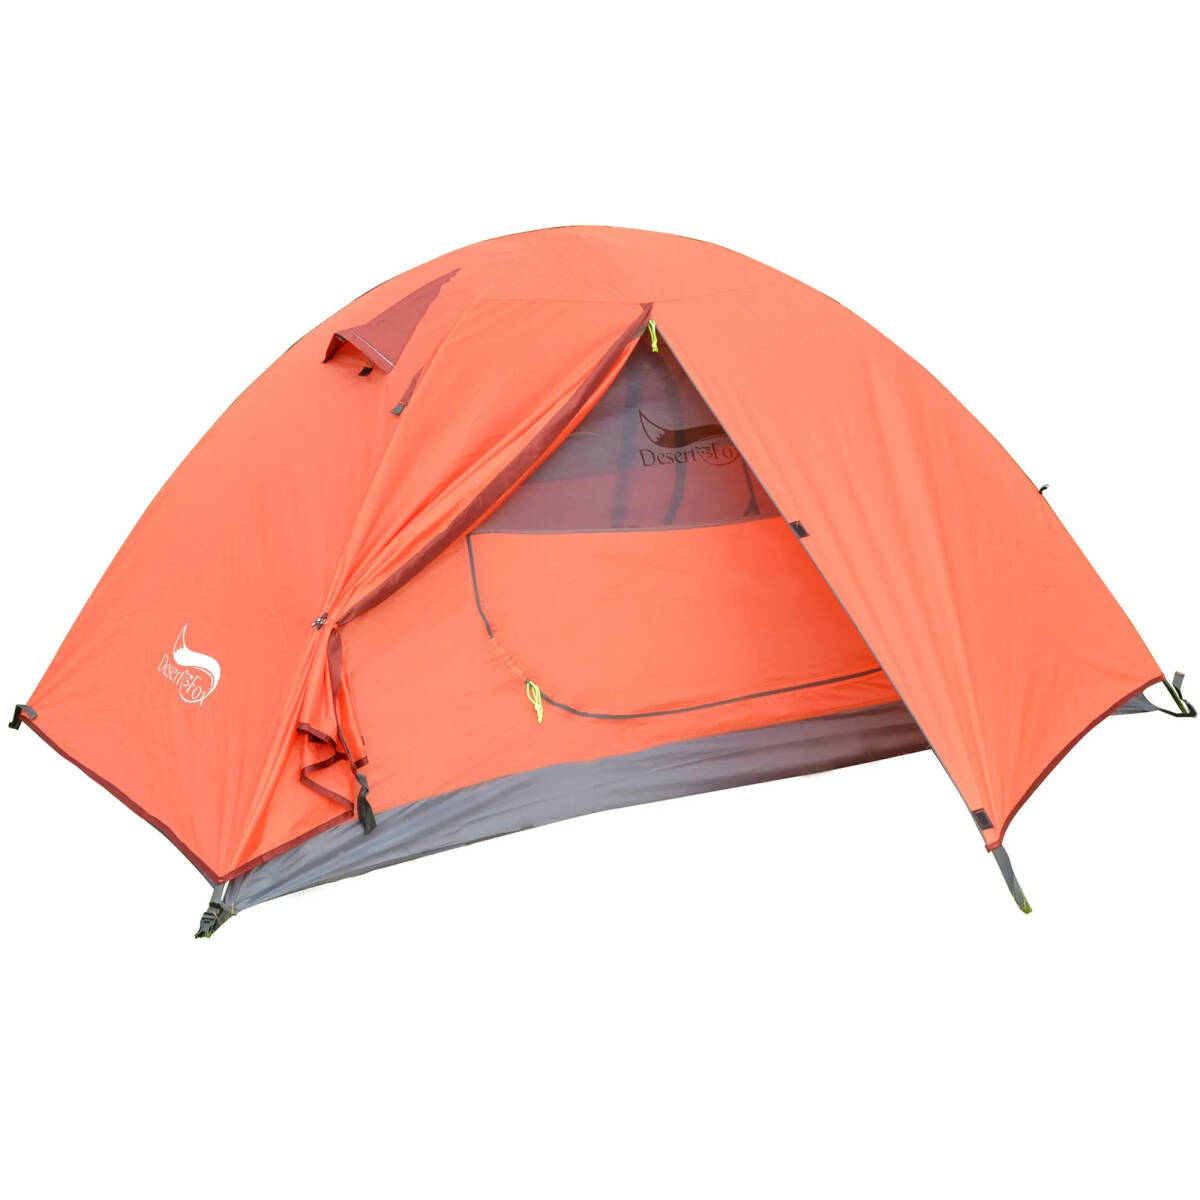 バックパッキングキャンプテント 軽量3人用テント 2層防水ポータブルアルミニウムポールトラベルテント